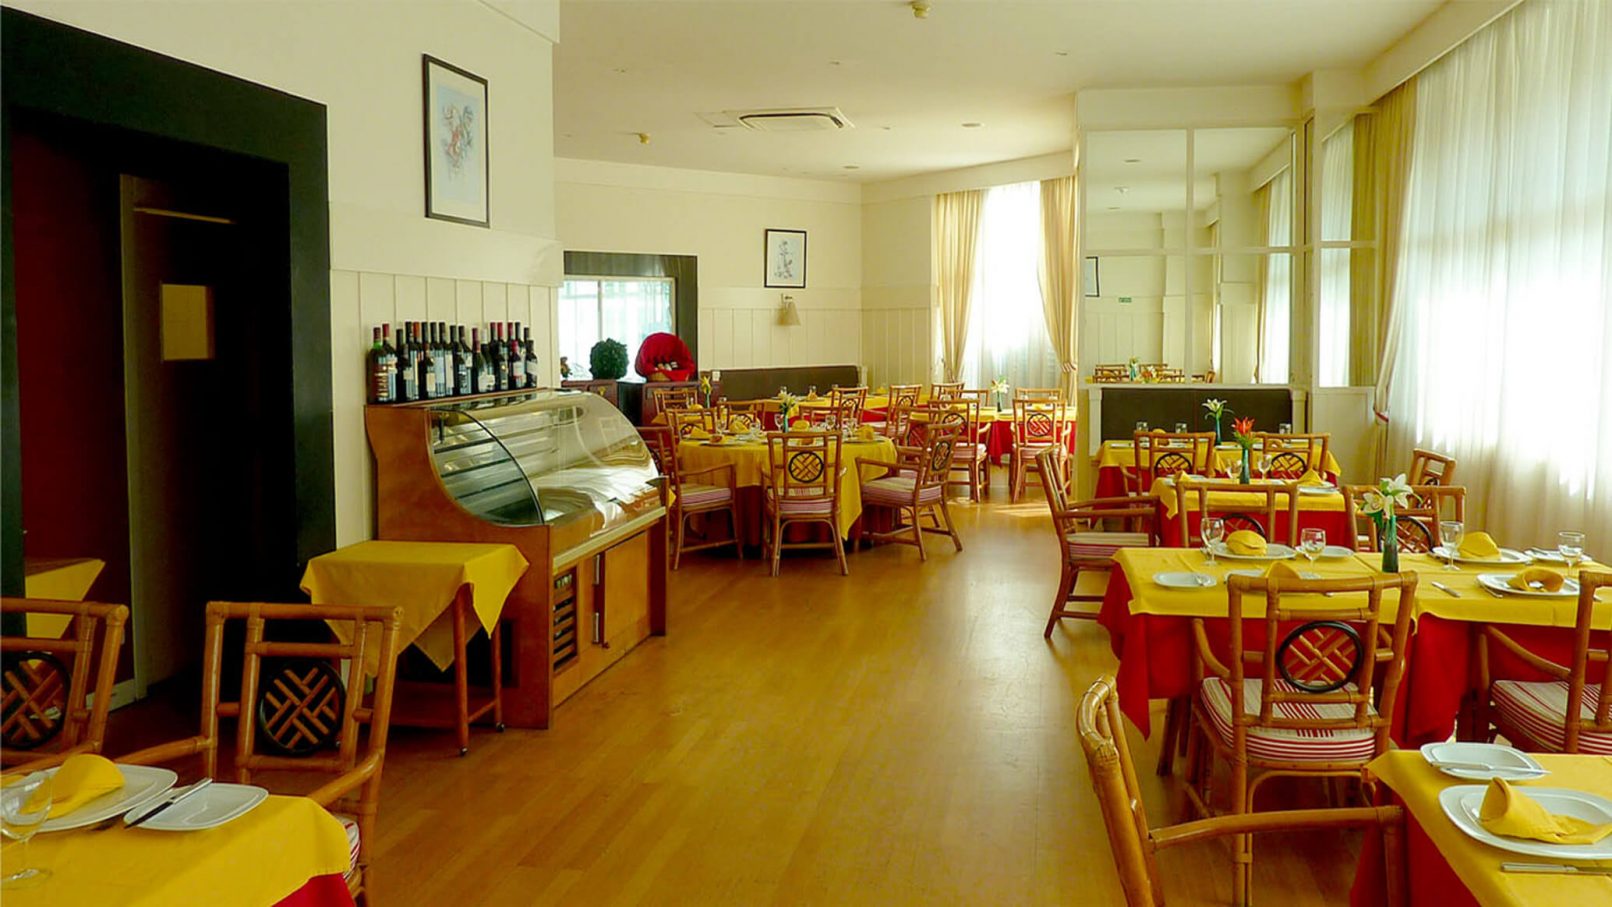 Ambiente do espaço de refeições do restaurante antes da intervenção da equipa de arquitectos. A transormação do espaço para a imagem da marca Kalorias é clara.